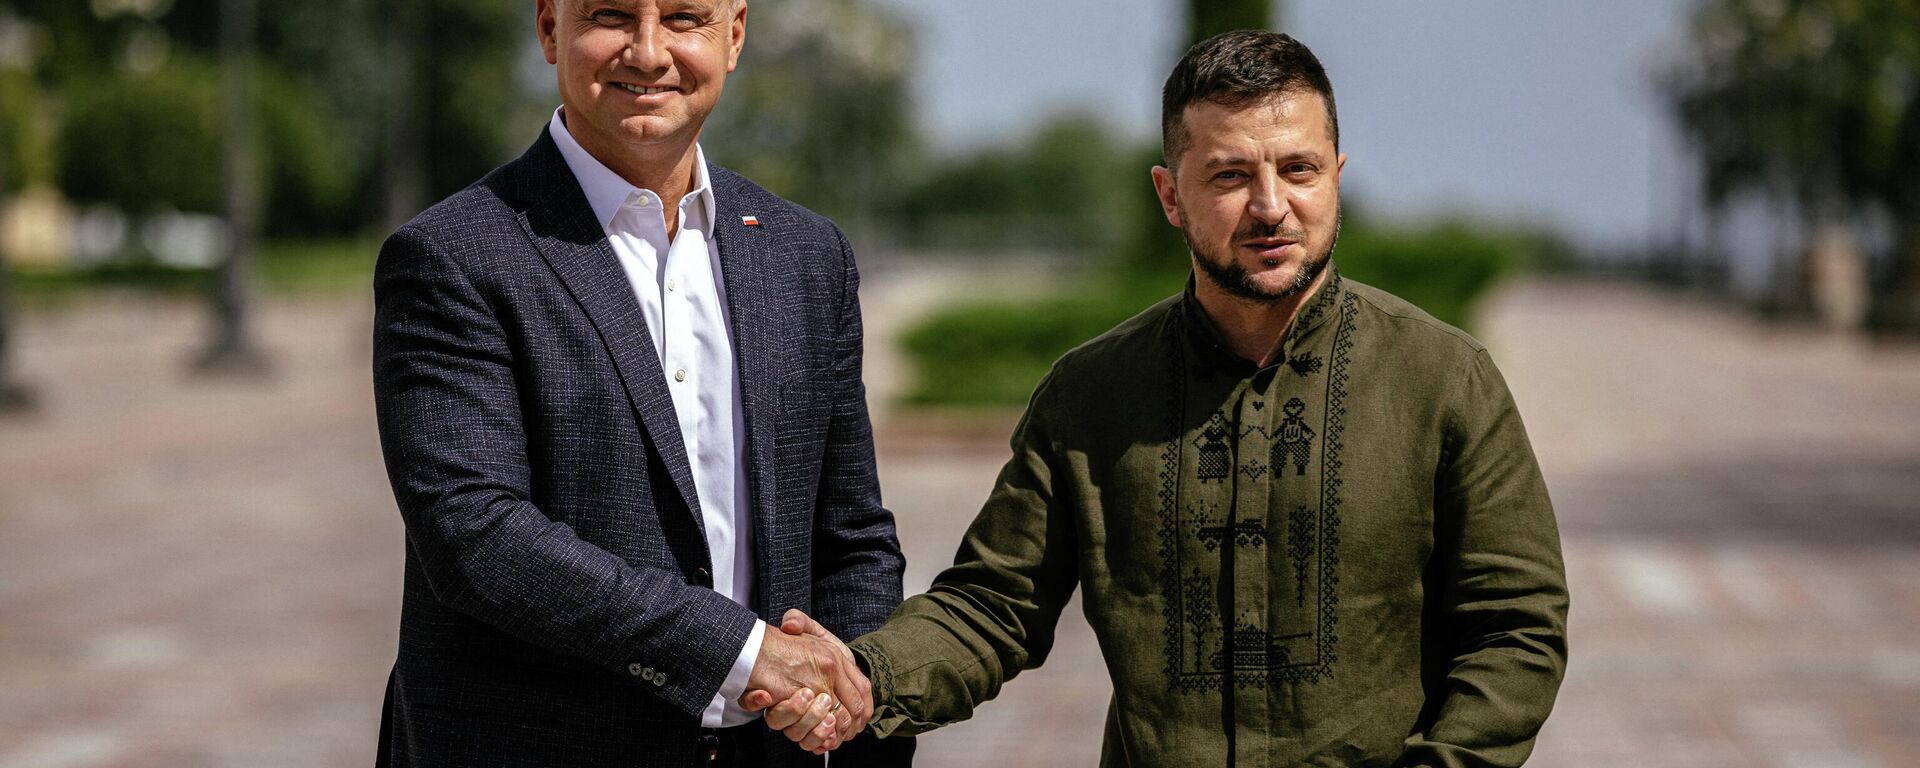 O presidente da Ucrânia Vladimir Zelensky (D) e o presidente da Polônia Andrzej Duda apertam as mãos durante coletiva de imprensa conjunta em Kiev, 23 de agosto de 2022 - Sputnik Brasil, 1920, 23.08.2022